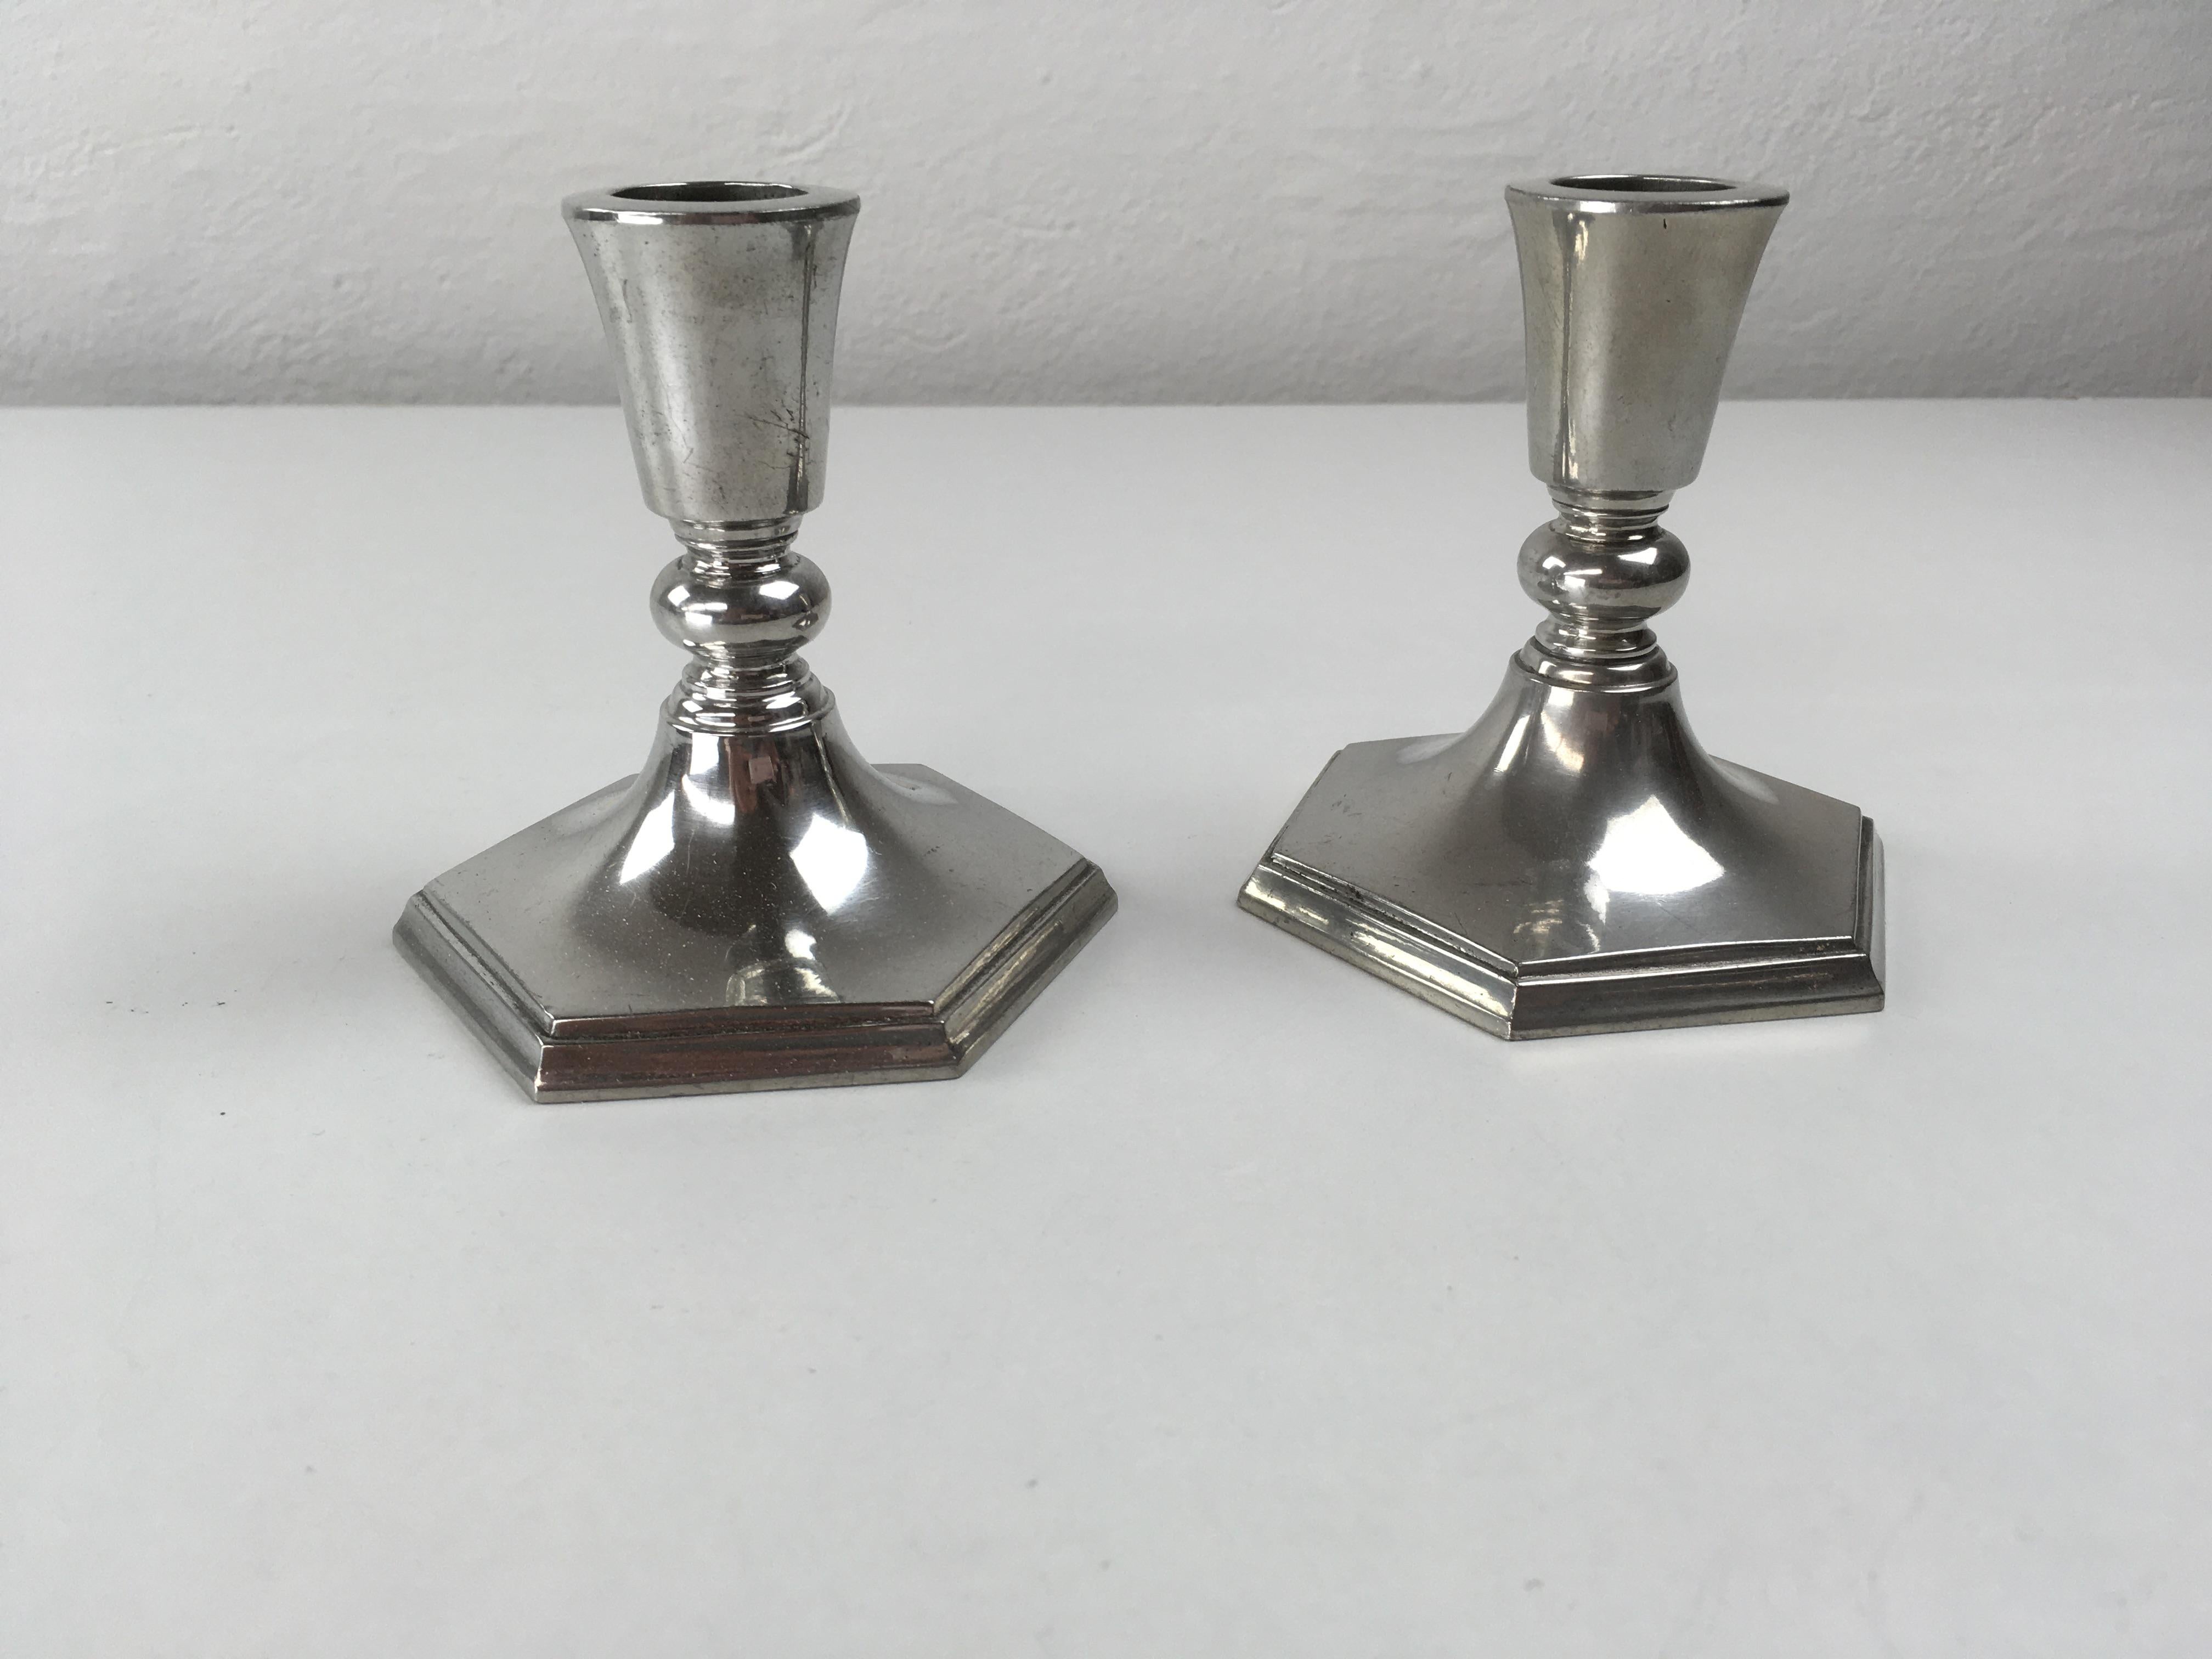 Satz von zwei dänischen Just Andersen Art-Deco-Kerzenhaltern aus Zinn, hergestellt von Just Andersen A/S in den 1930er Jahren.

Die Kerzenhalter sind in gutem Vintage-Zustand und mit Just markiert. Andersens Dreiecksmarke. 

Just Andersen